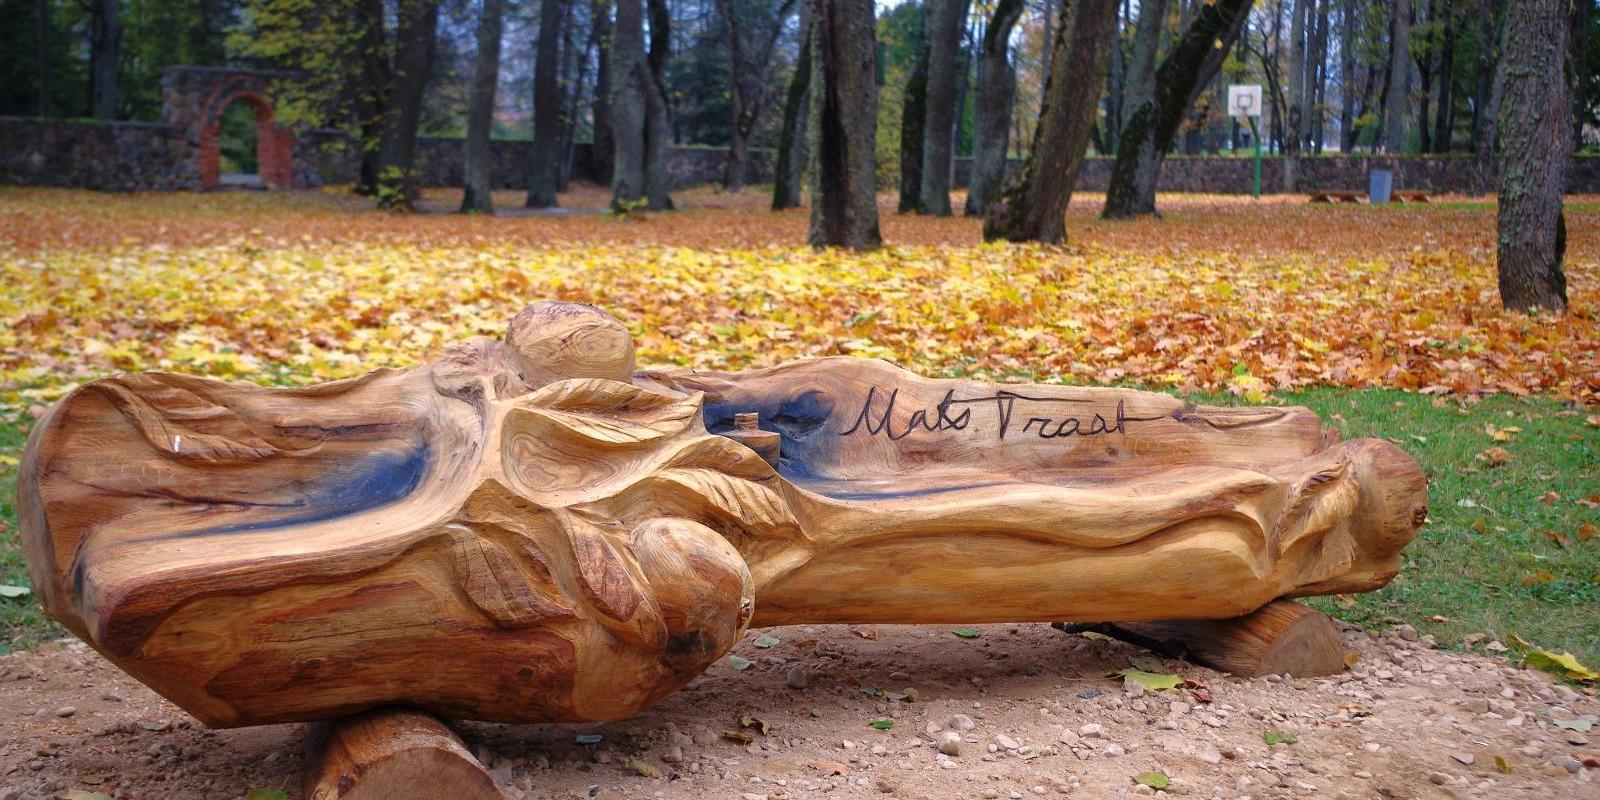 Wooden sculpture in Rannu Park – Mats Traat